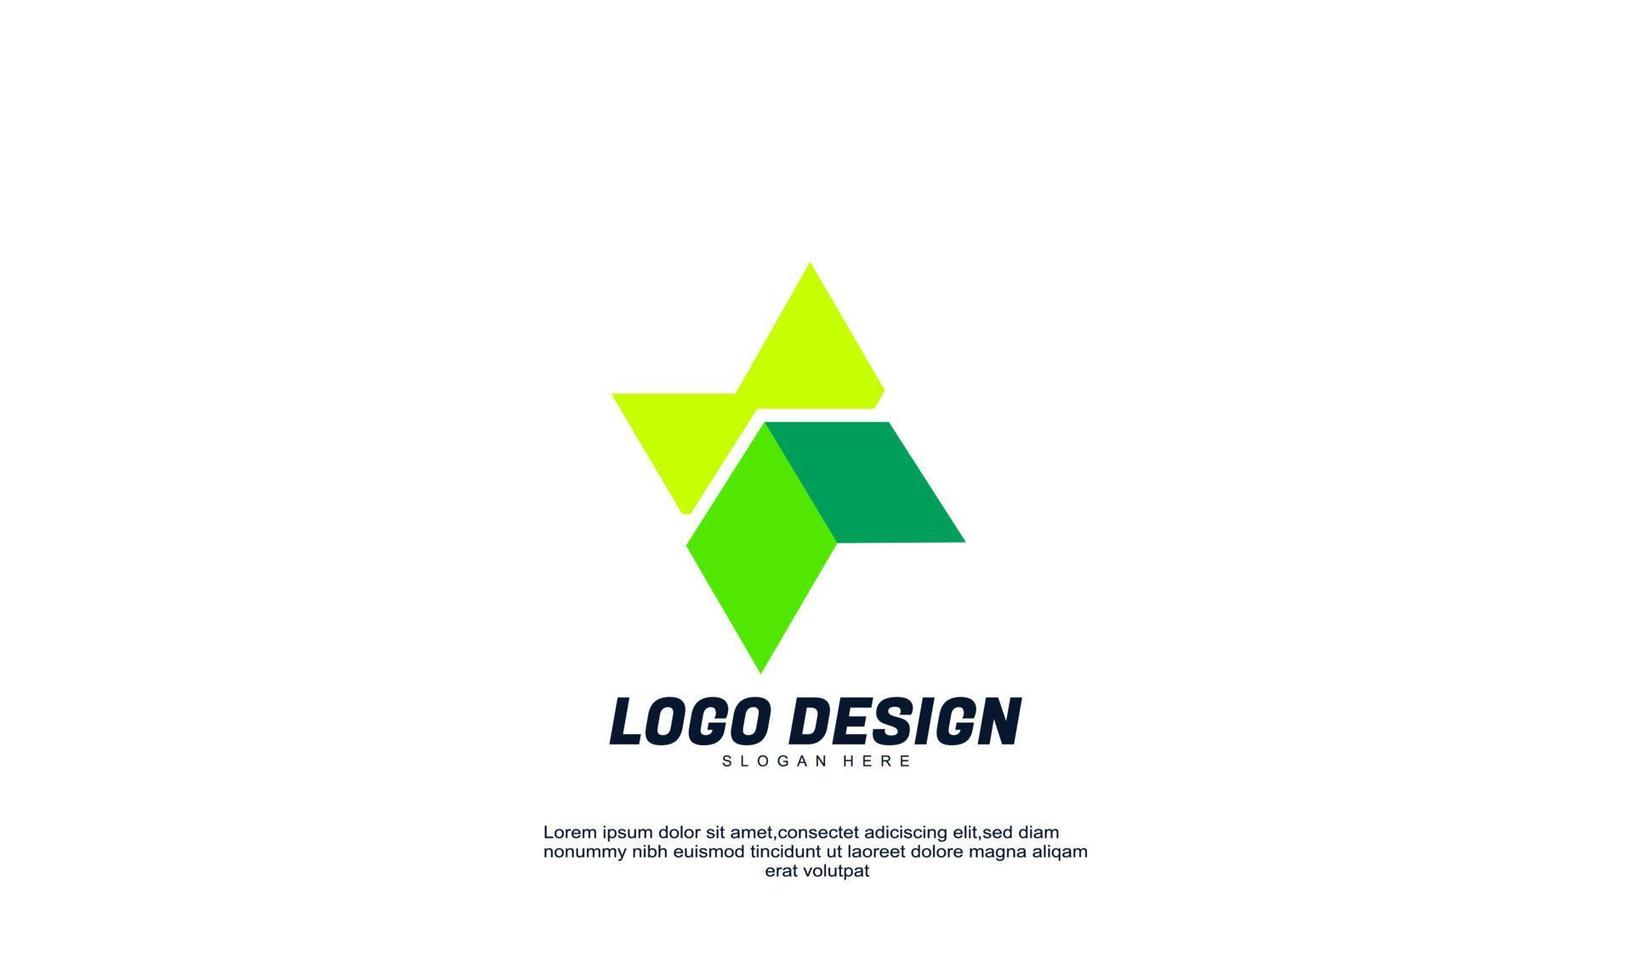 estoque vector identidade abstrata ideia criativa isolado logotipo moderno para empresa ou negócios cor verde com modelo de design plano